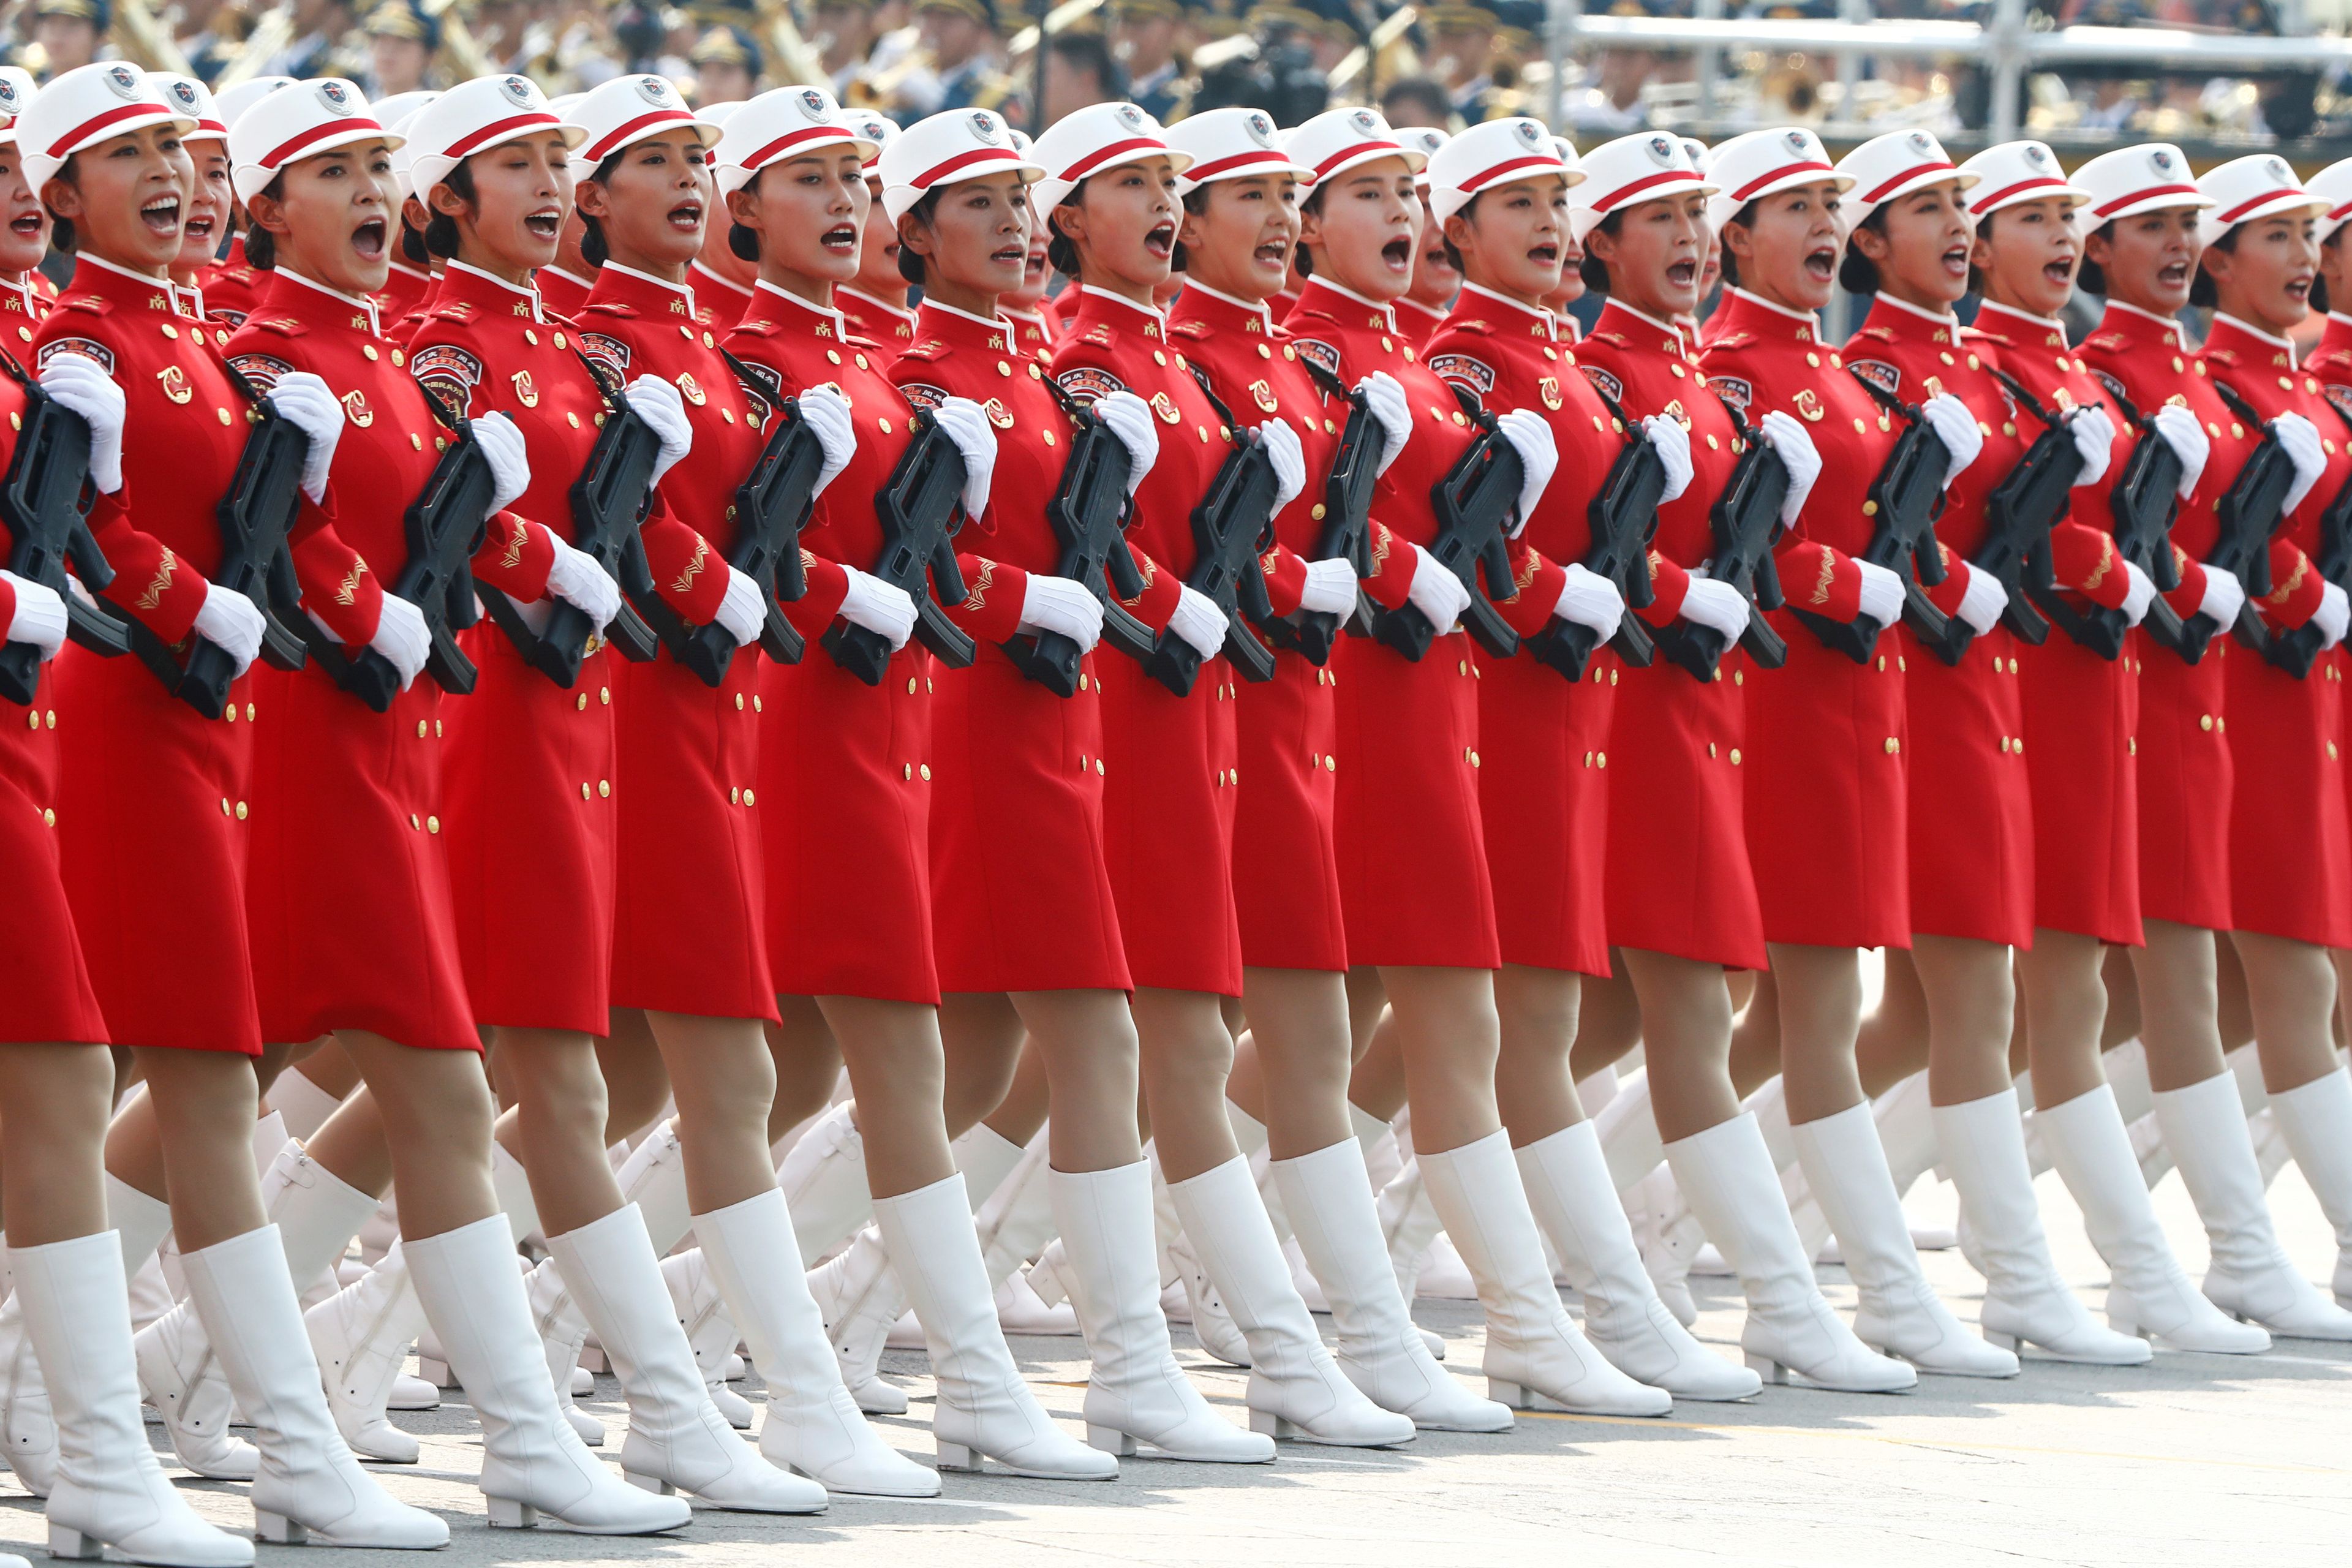 La milicia marcha en formación por la plaza de Tiananmen durante el desfile militar que conmemora el 70º aniversario de la fundación de la República Popular China.